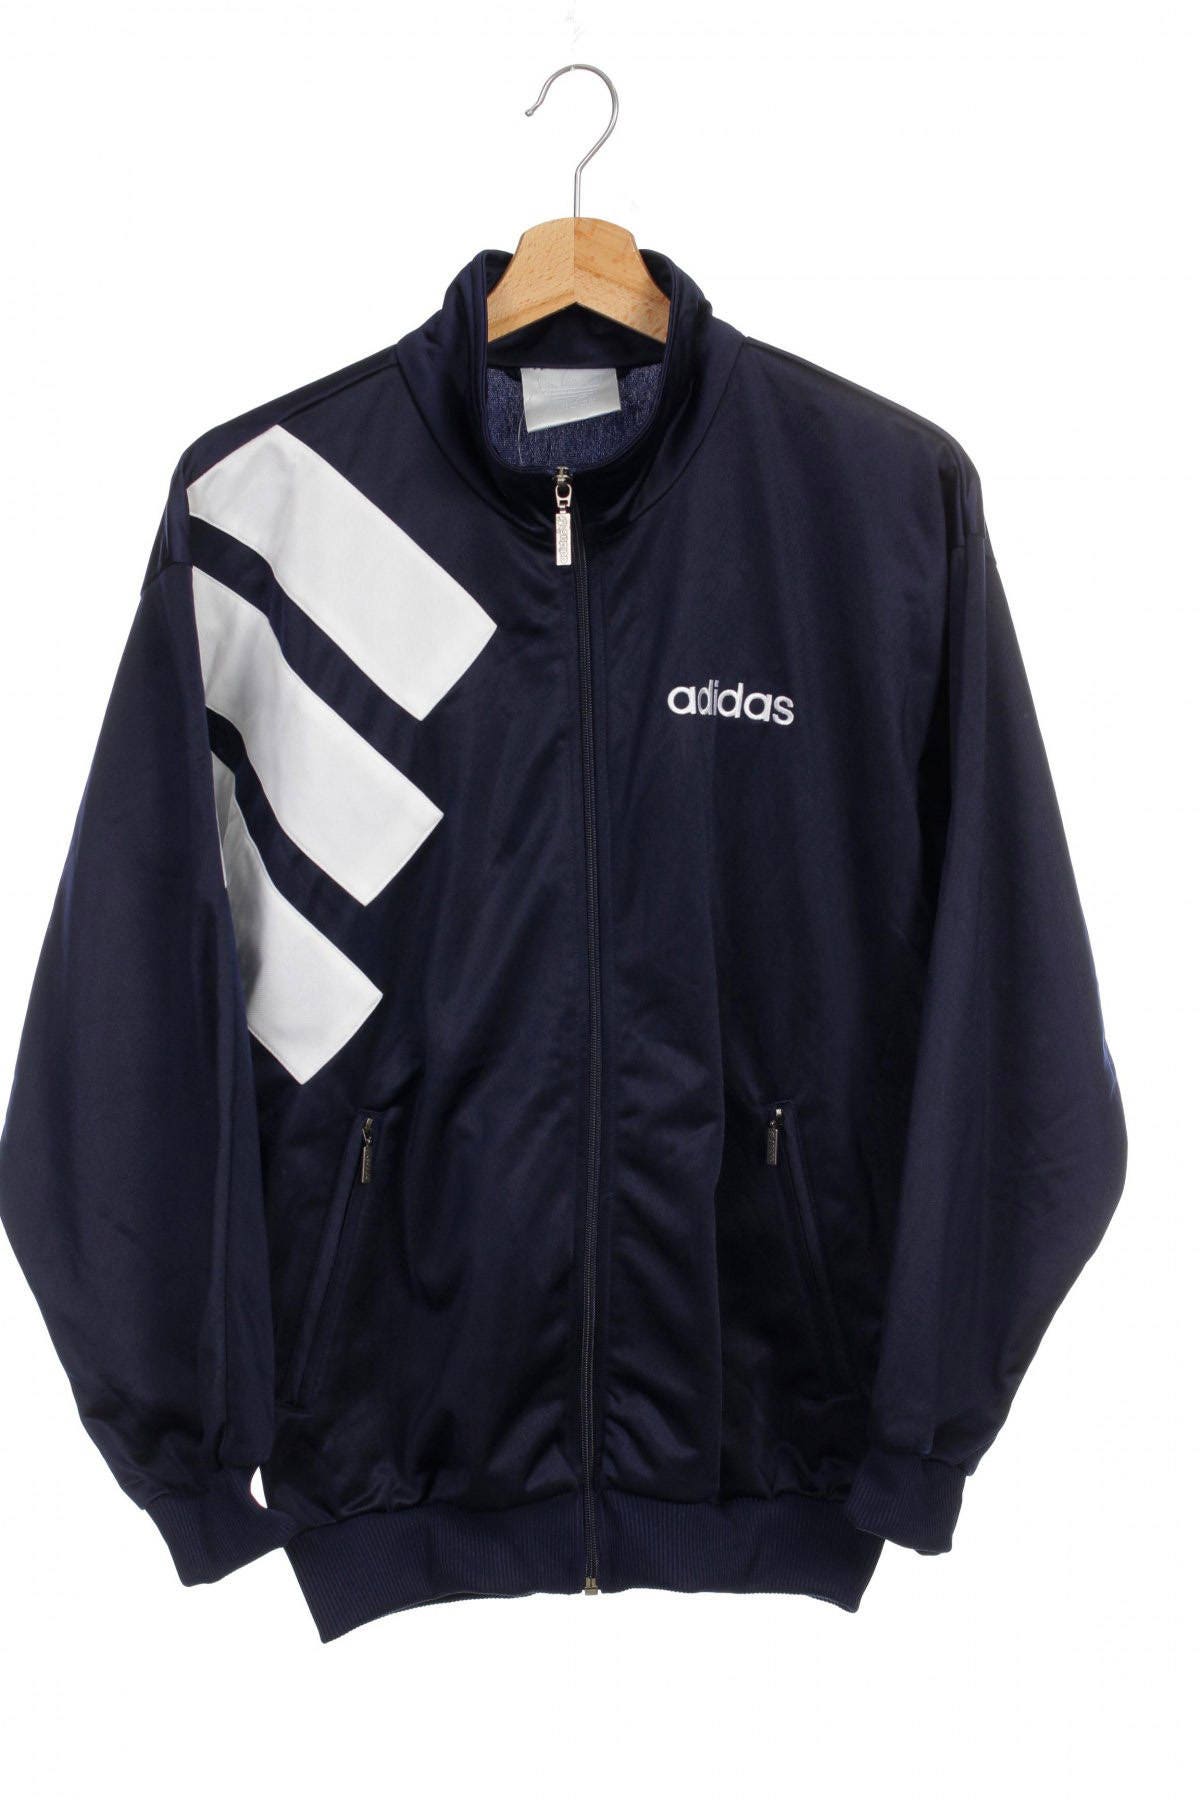 Adidas Jacket 90s. Adidas Jacket 90. Adidas Vintage track Jacket Mens. Куртка adidas Trek. Adidas tracking